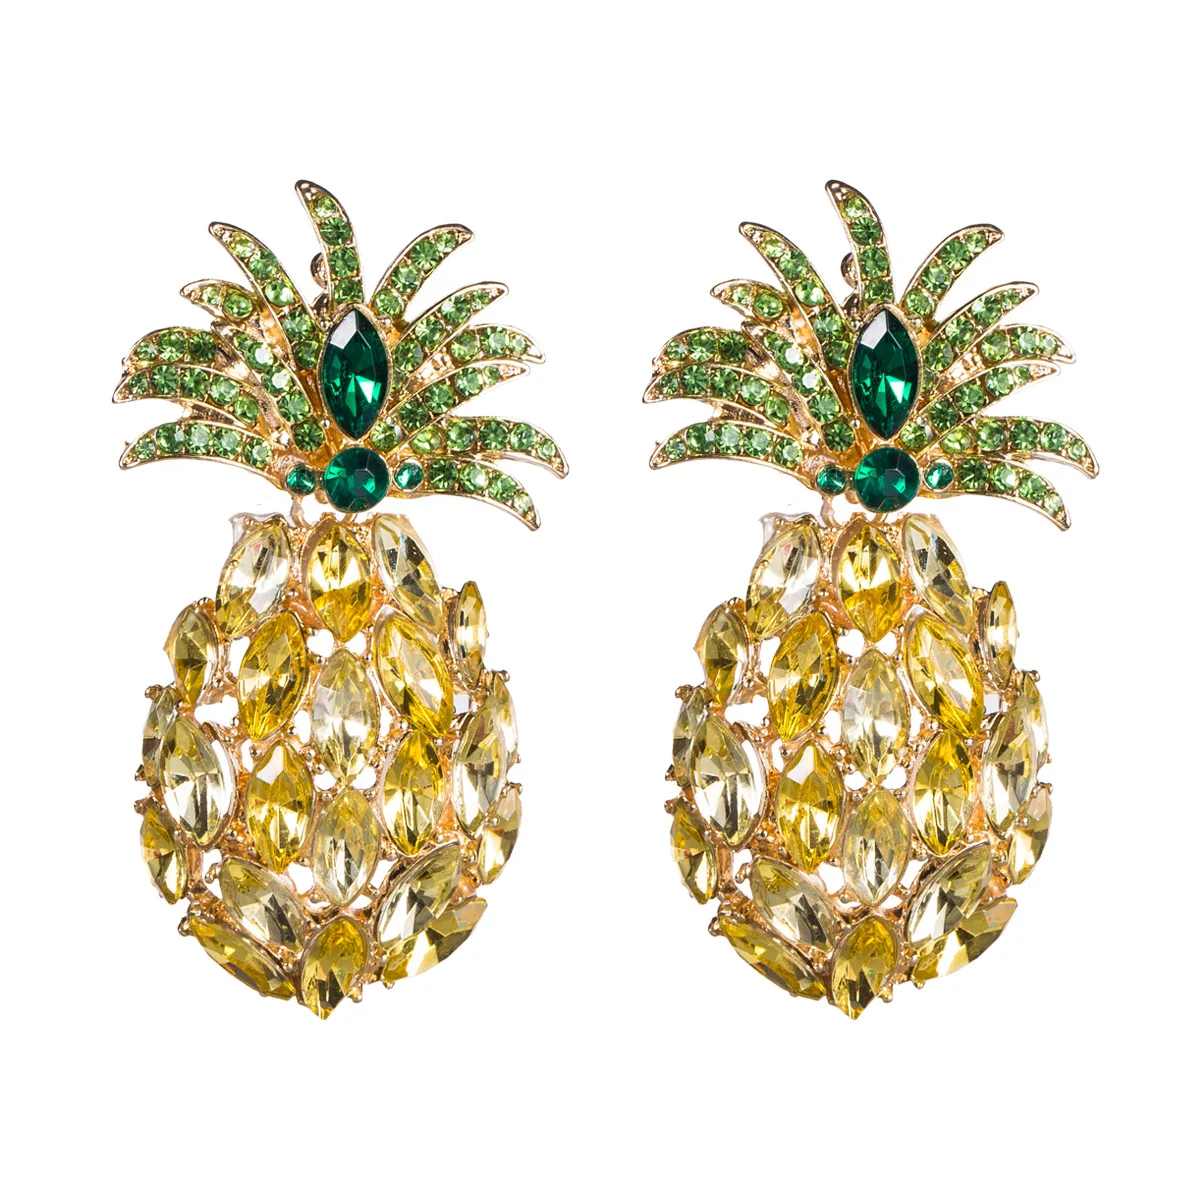 

Trend Bohemian Tassel Statement Earrings Jewelry Sparkling Rhinestone Pineapple Dangle Earrings For Woman Party